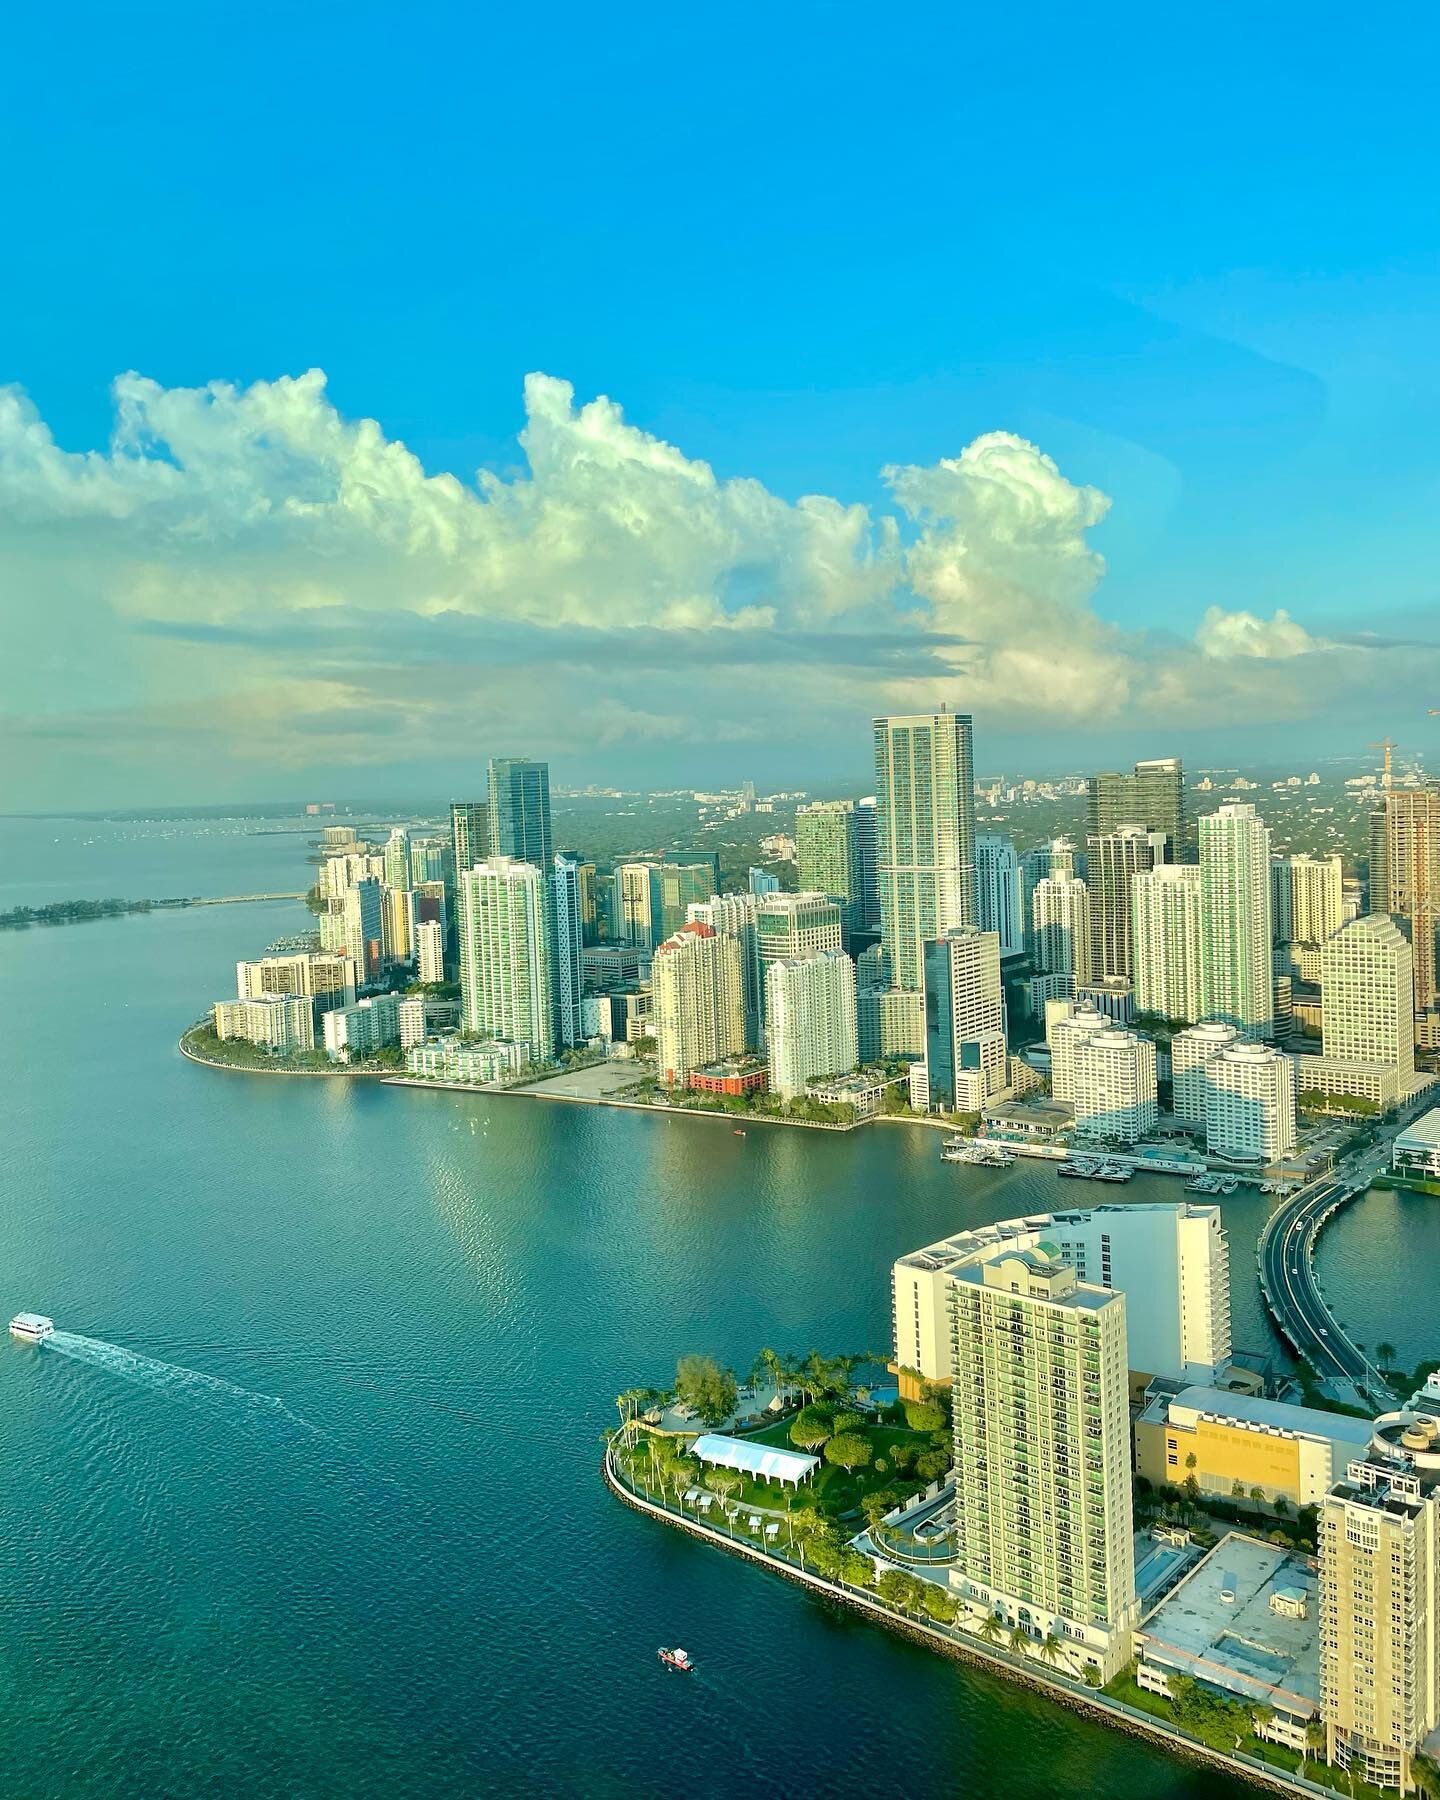 Well hello Miami 😍 Views from our private plane tour ✈️✨
.
.
.
.
#miami #miamibeach #miaminightlife #thingstodo #thingstodomiami #mia #fll #beach #views #florida #florida #soflo #downtown #amazingviews #miamidowntown #buildings #visitmiami #tourmiam